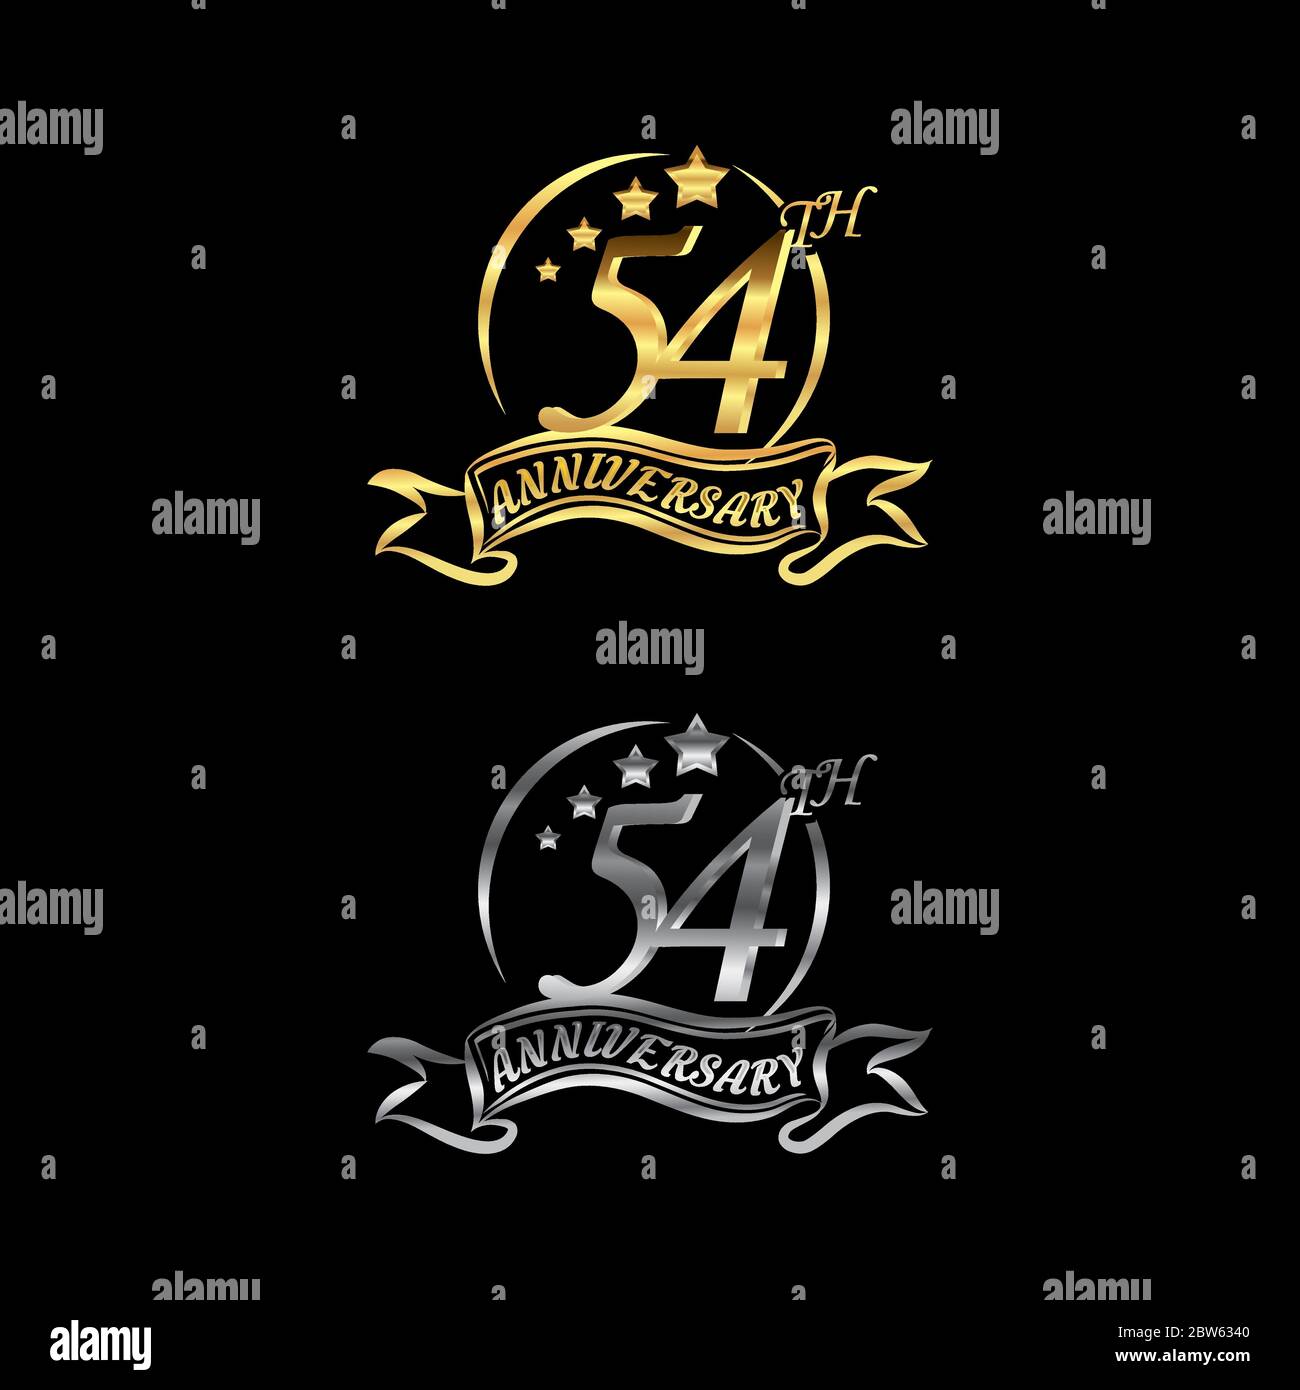 Feiern Sie das 54. Jubiläum Logo, Sternform, mit Gold und Silber Ringe und Abstufung Bänder isoliert auf einem schwarzen Hintergrund.EPS 10 Stock Vektor